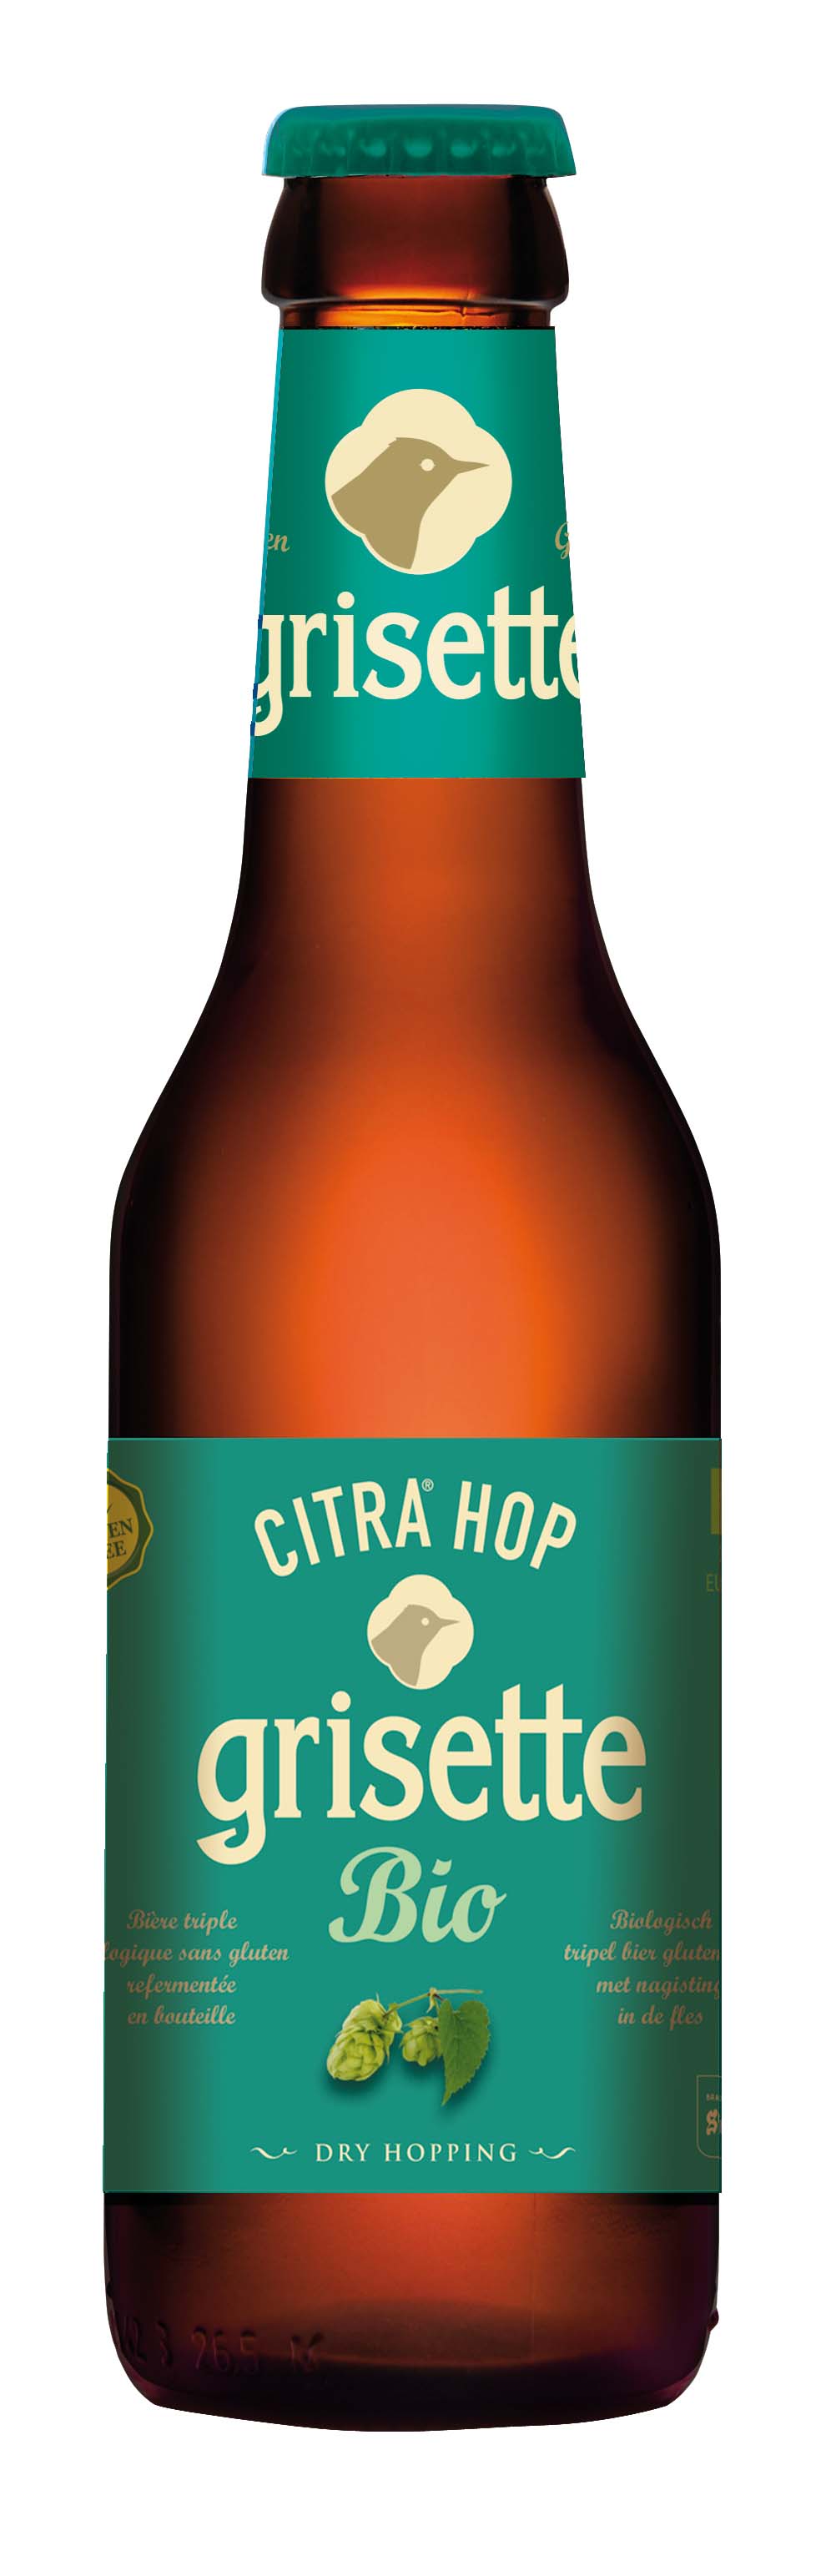 Grisette Citra hop bio & glutenvrij 0.25L 8% alc.